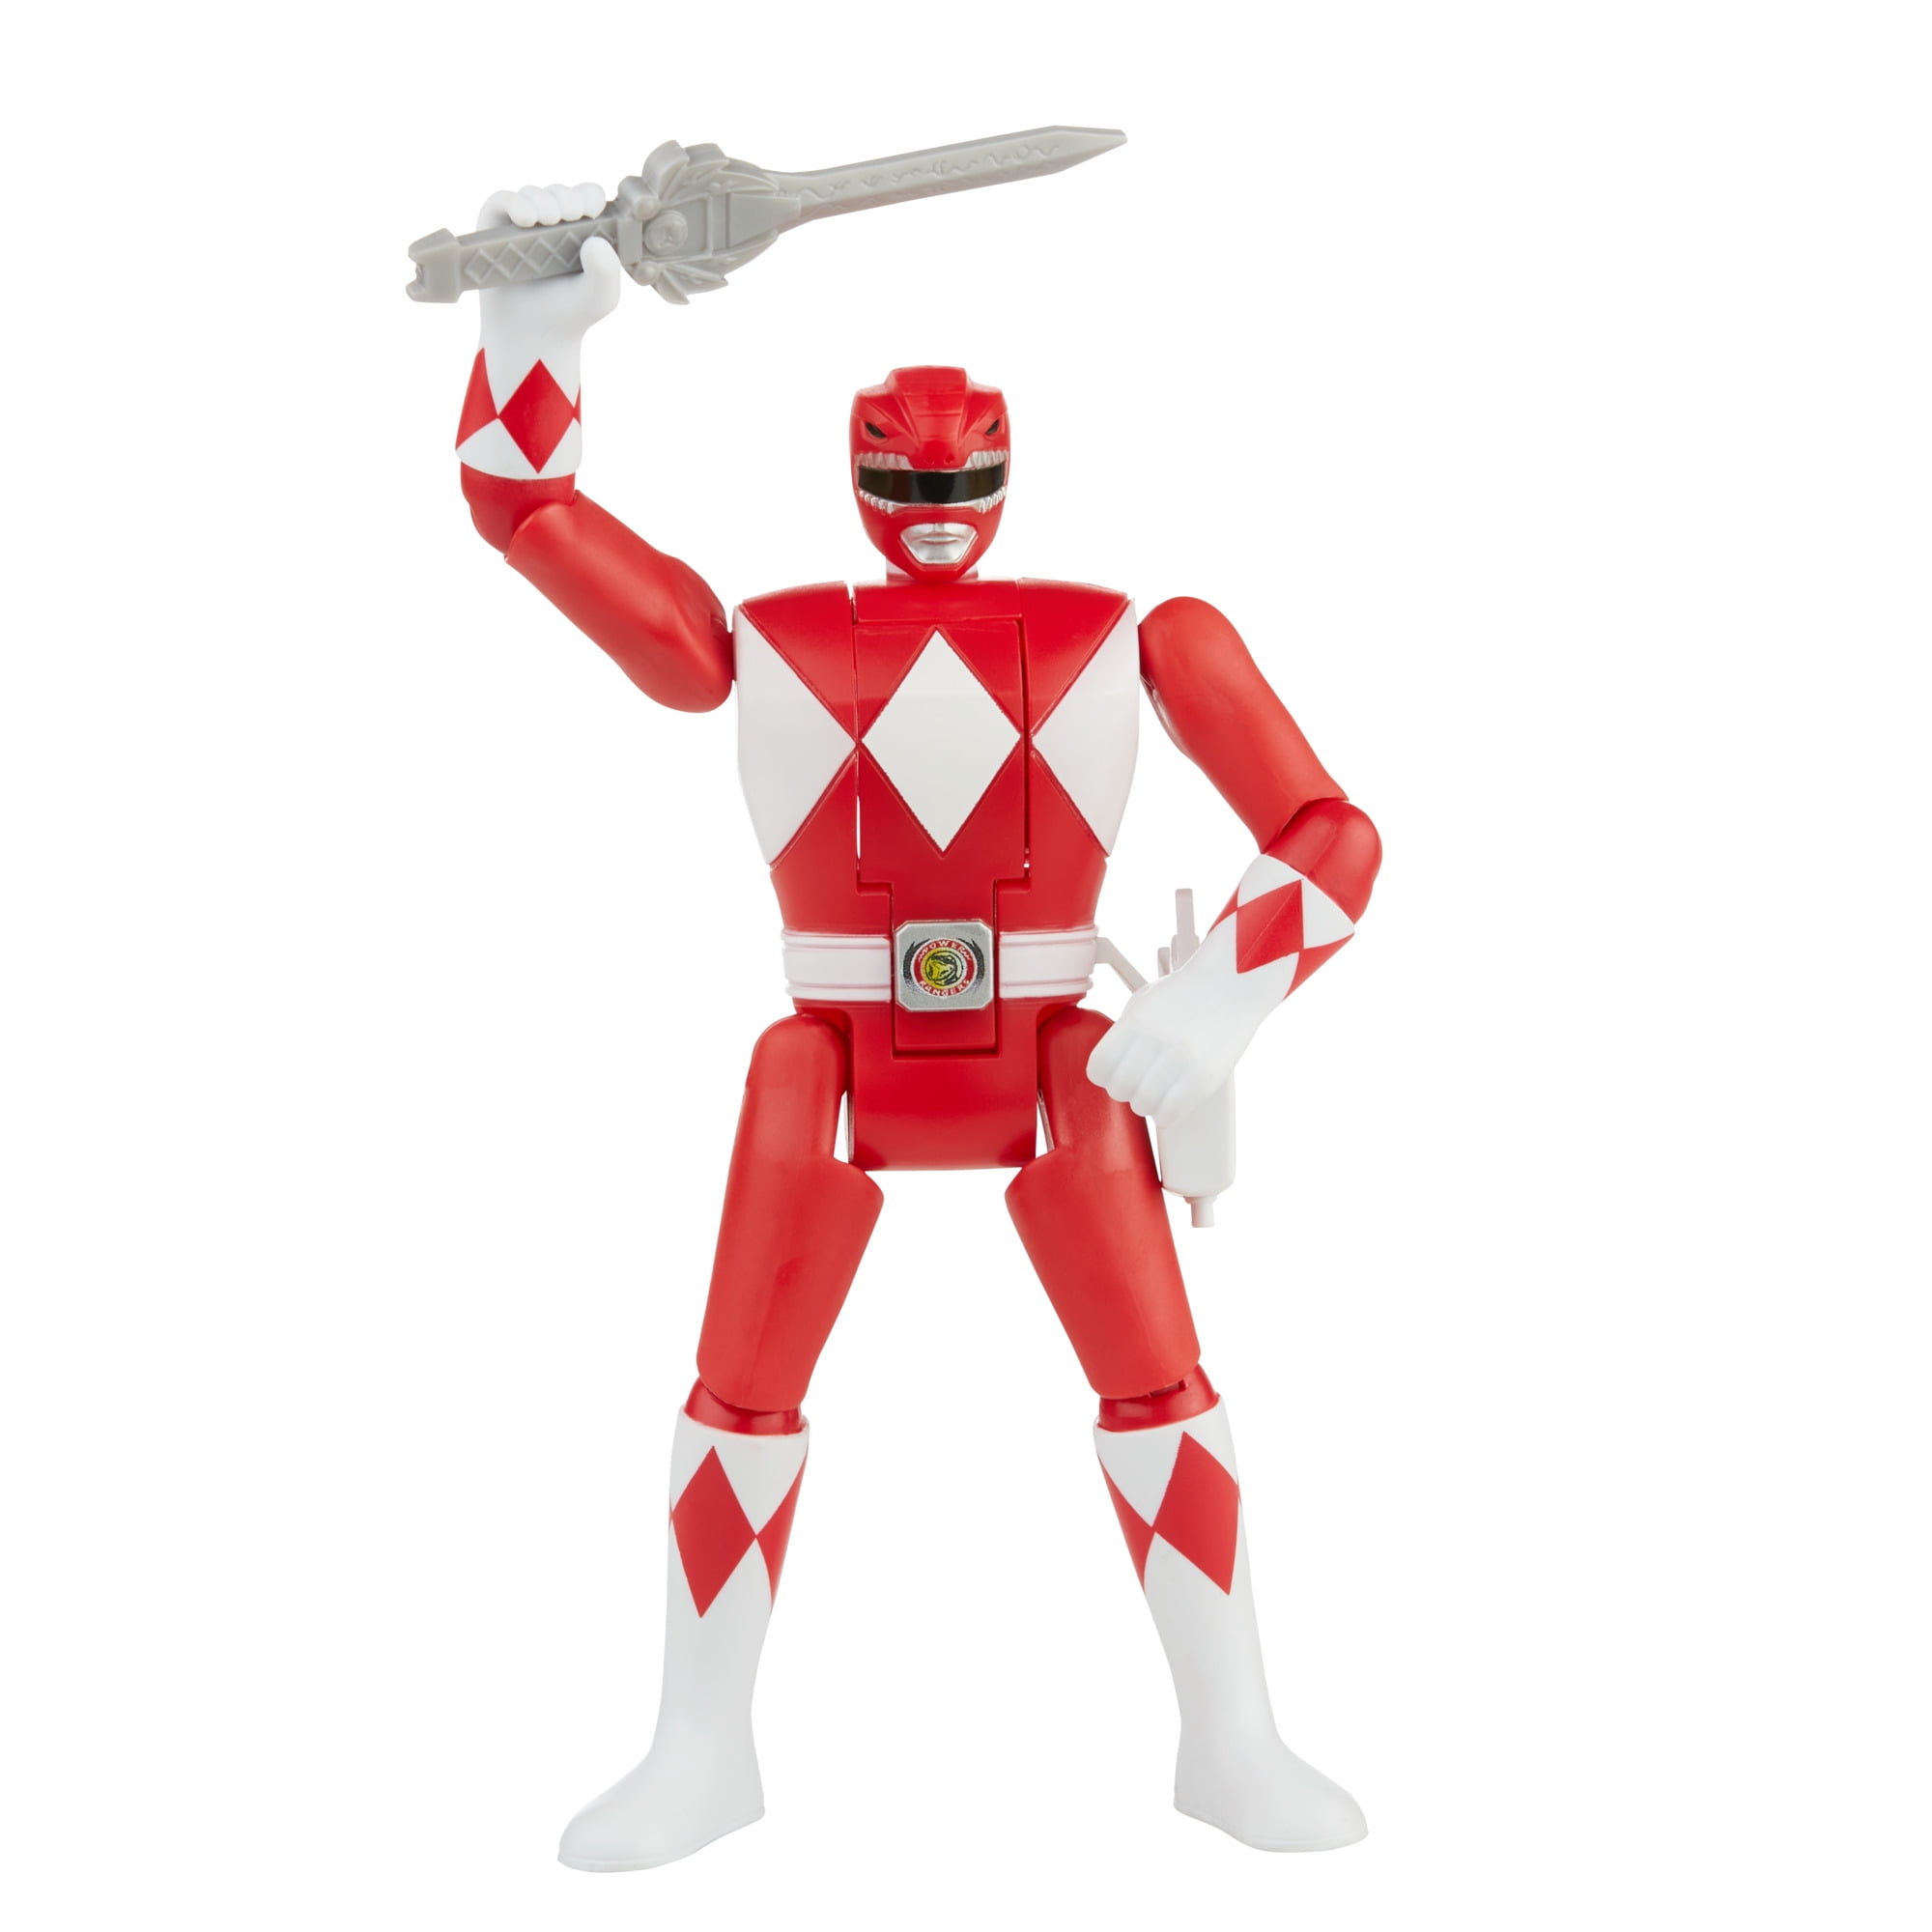 Power Rangers Retro-Morphin Red Ranger 